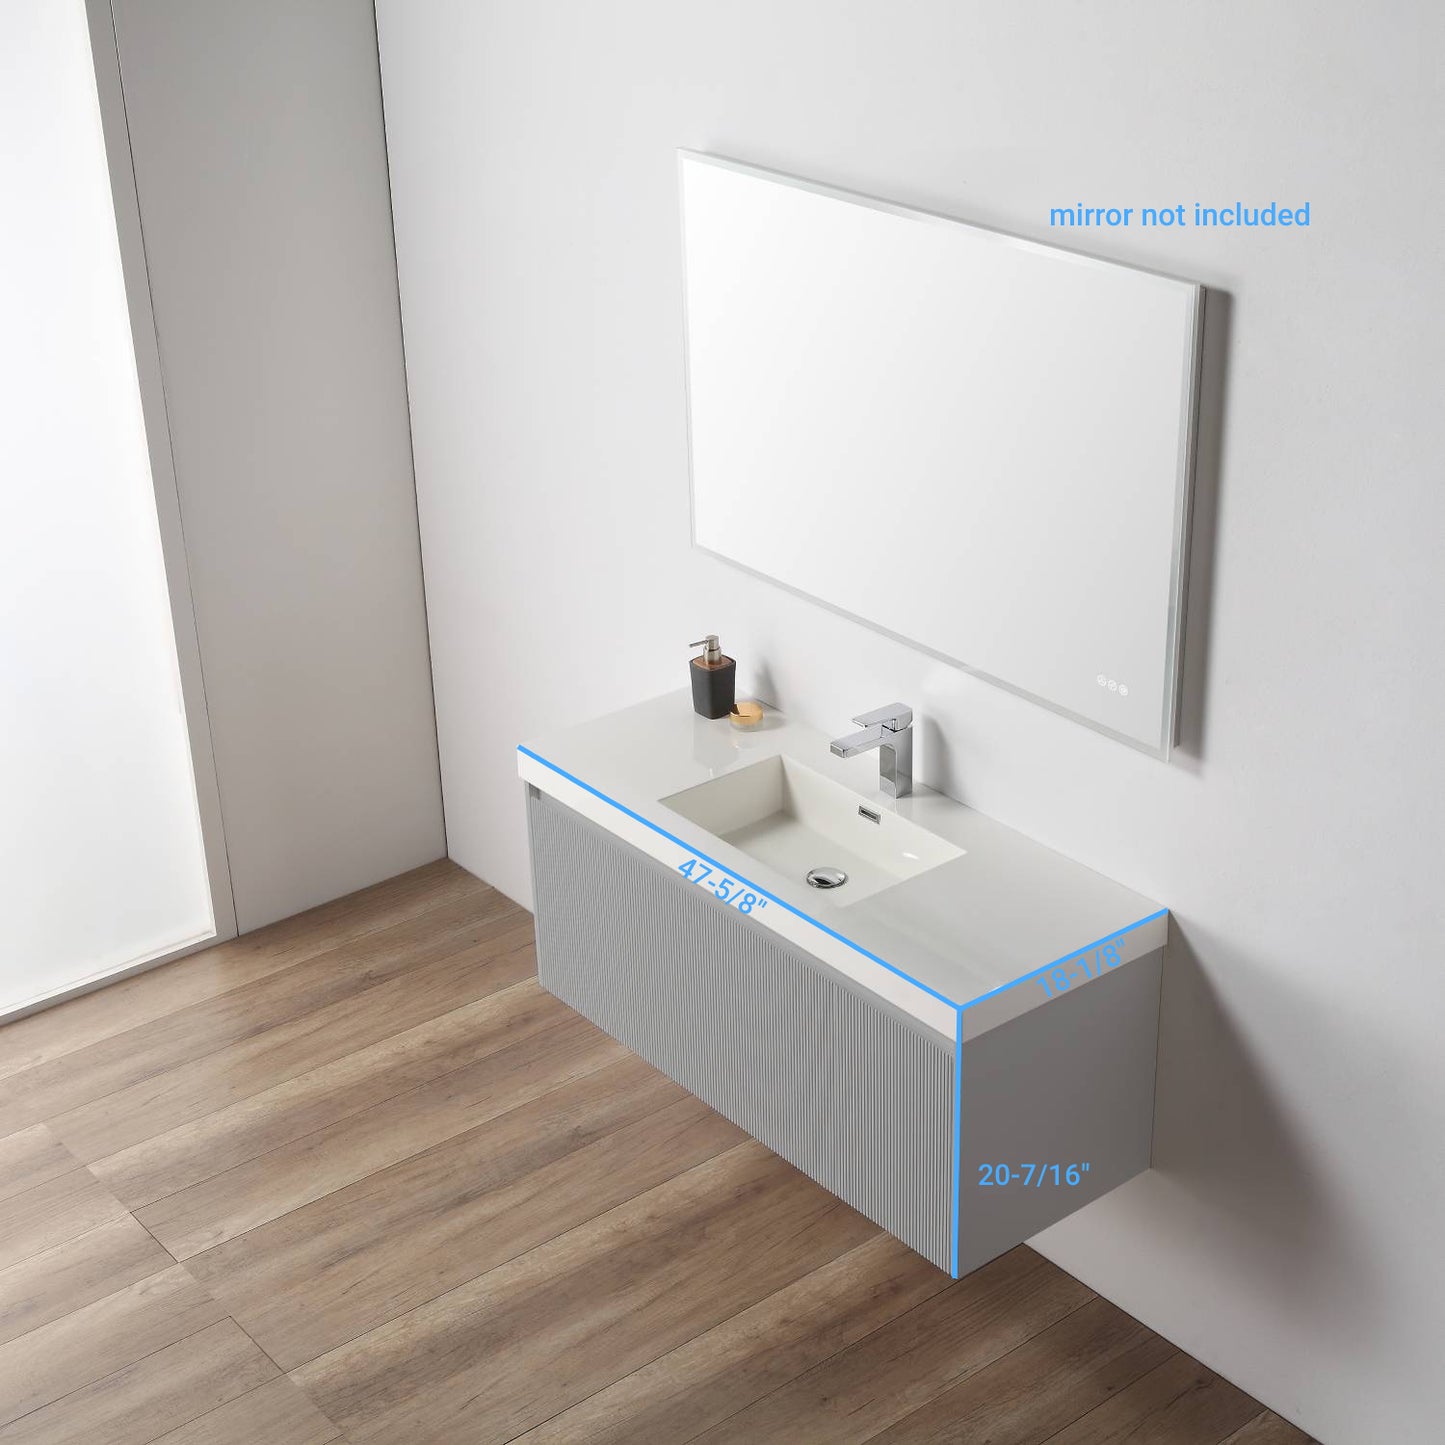 Positano 48" Floating Bathroom Vanity with Single Acrylic Sink - Light Grey